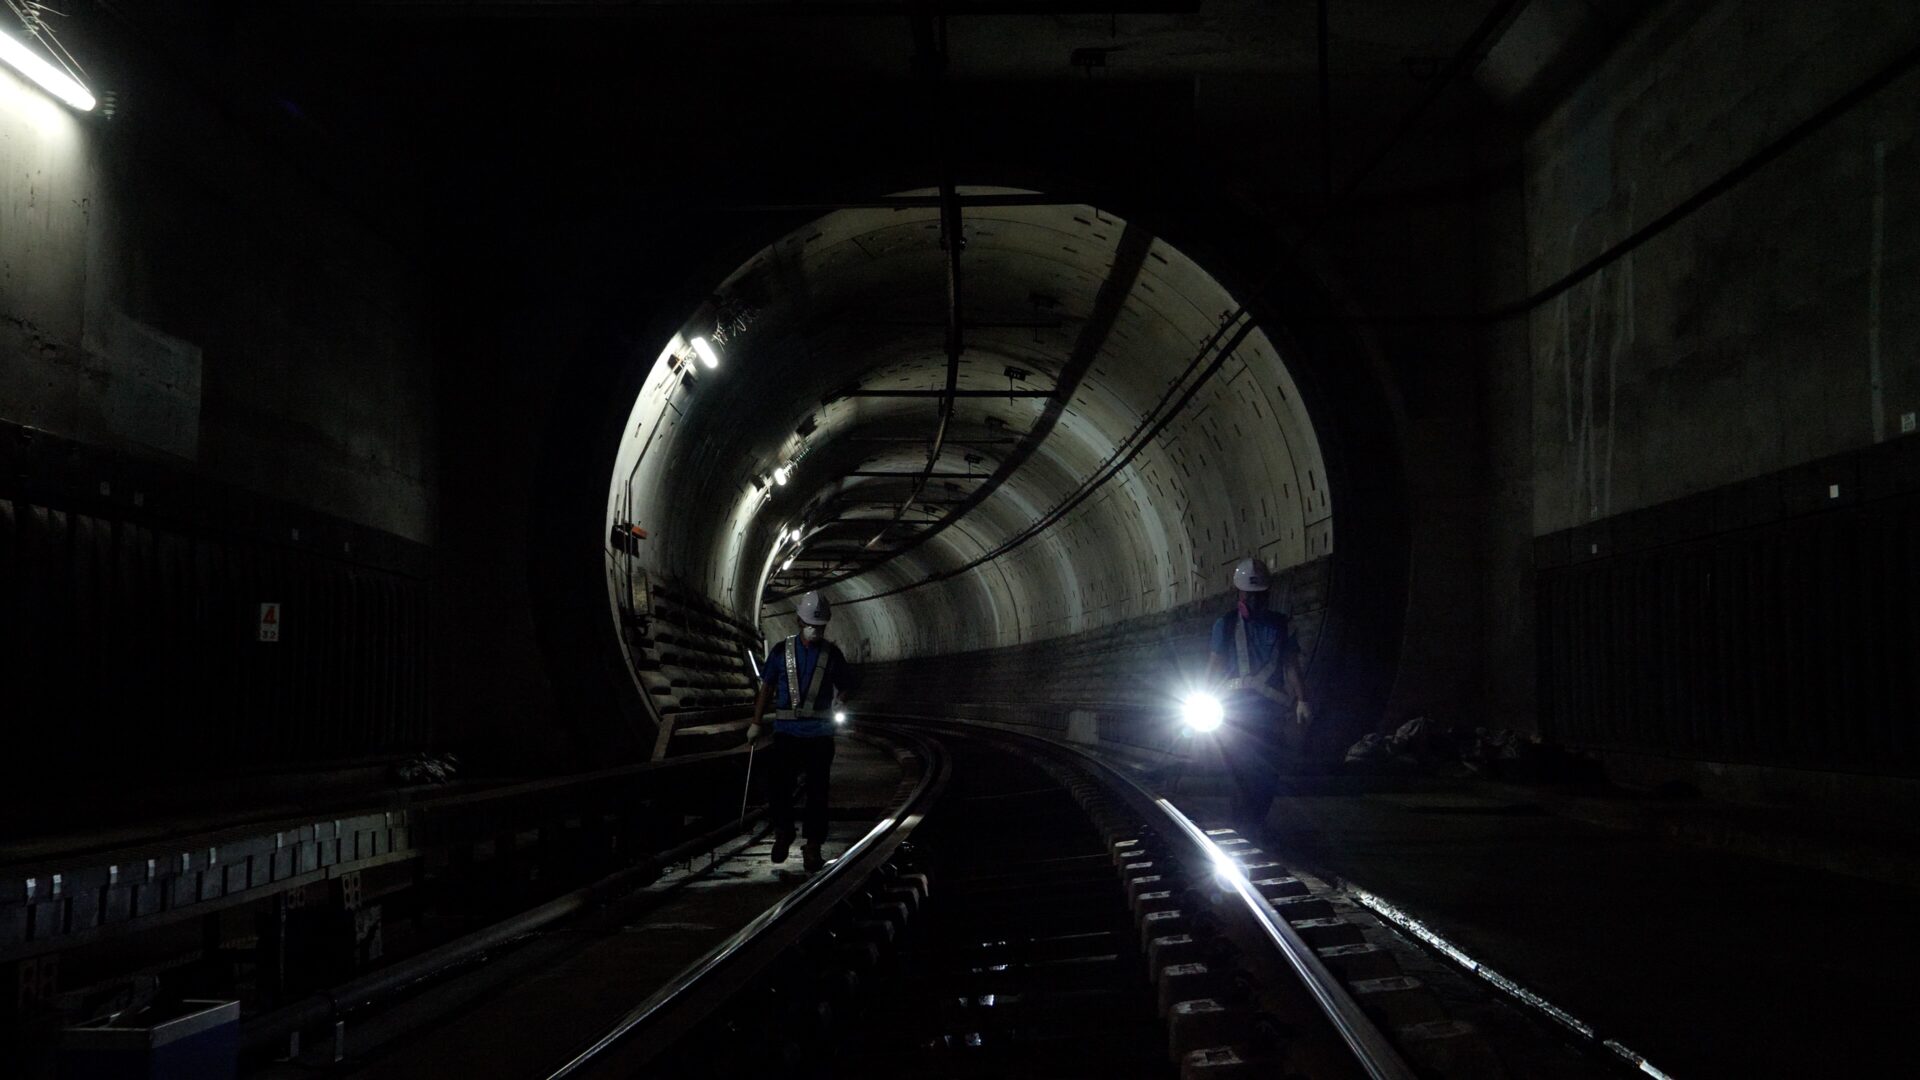 언더그라운드 스틸컷1.어둡고 긴 지하터널 안에 노동자 두 명이 선로를 따라 걷는다. 노동자들은 선로의 양쪽에서 손전등으로 선로를 비추며 그것을 정비한다.